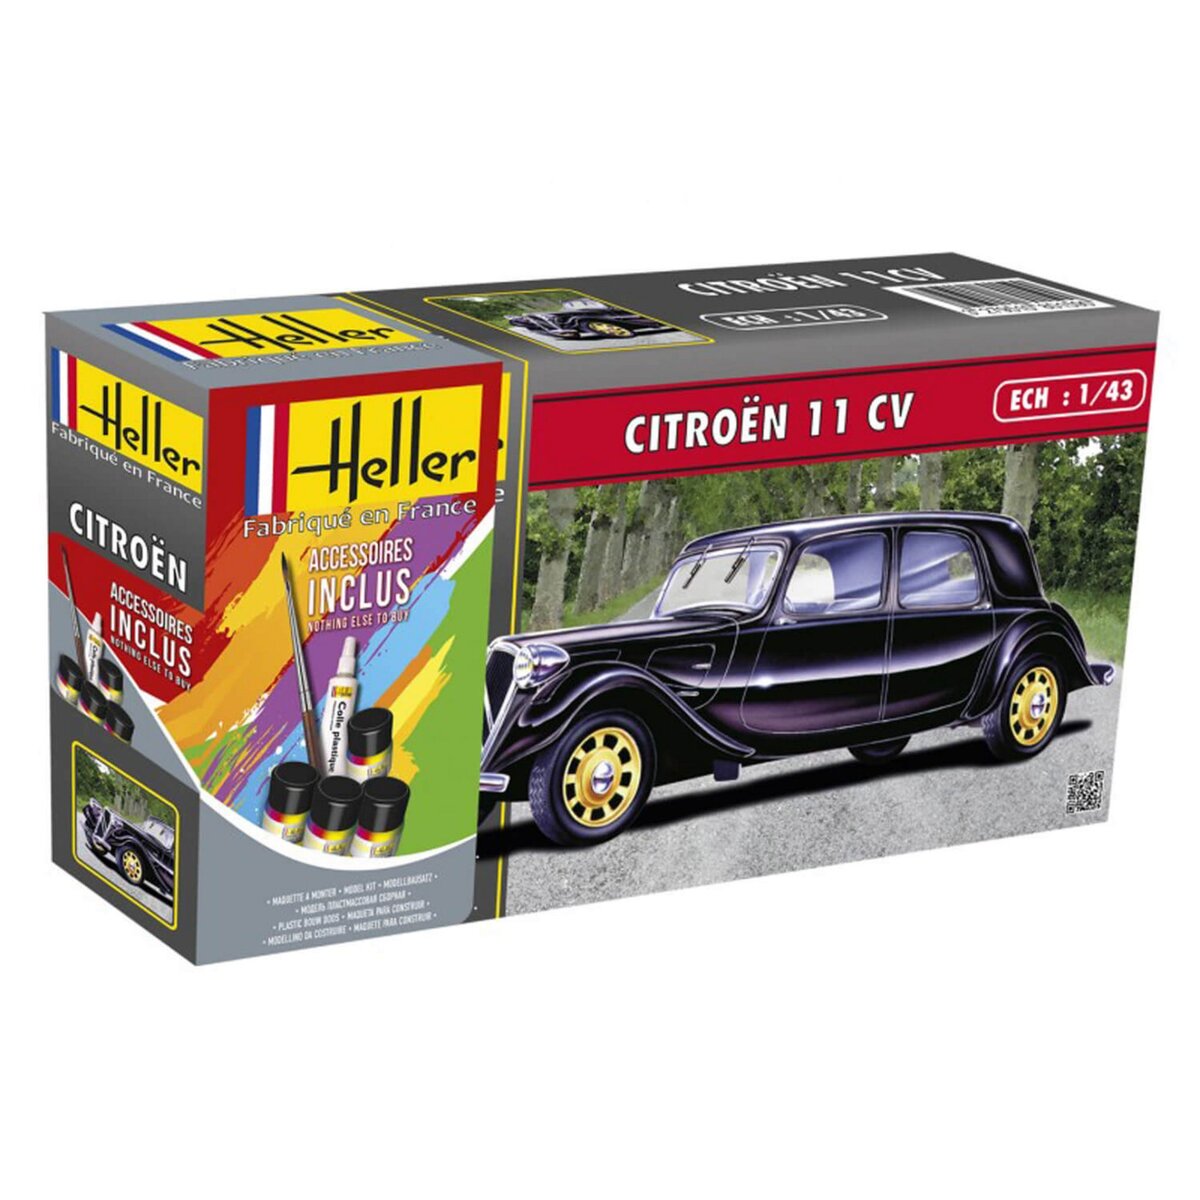 Heller Maquette voiture : Kit : Citroën 11 CV